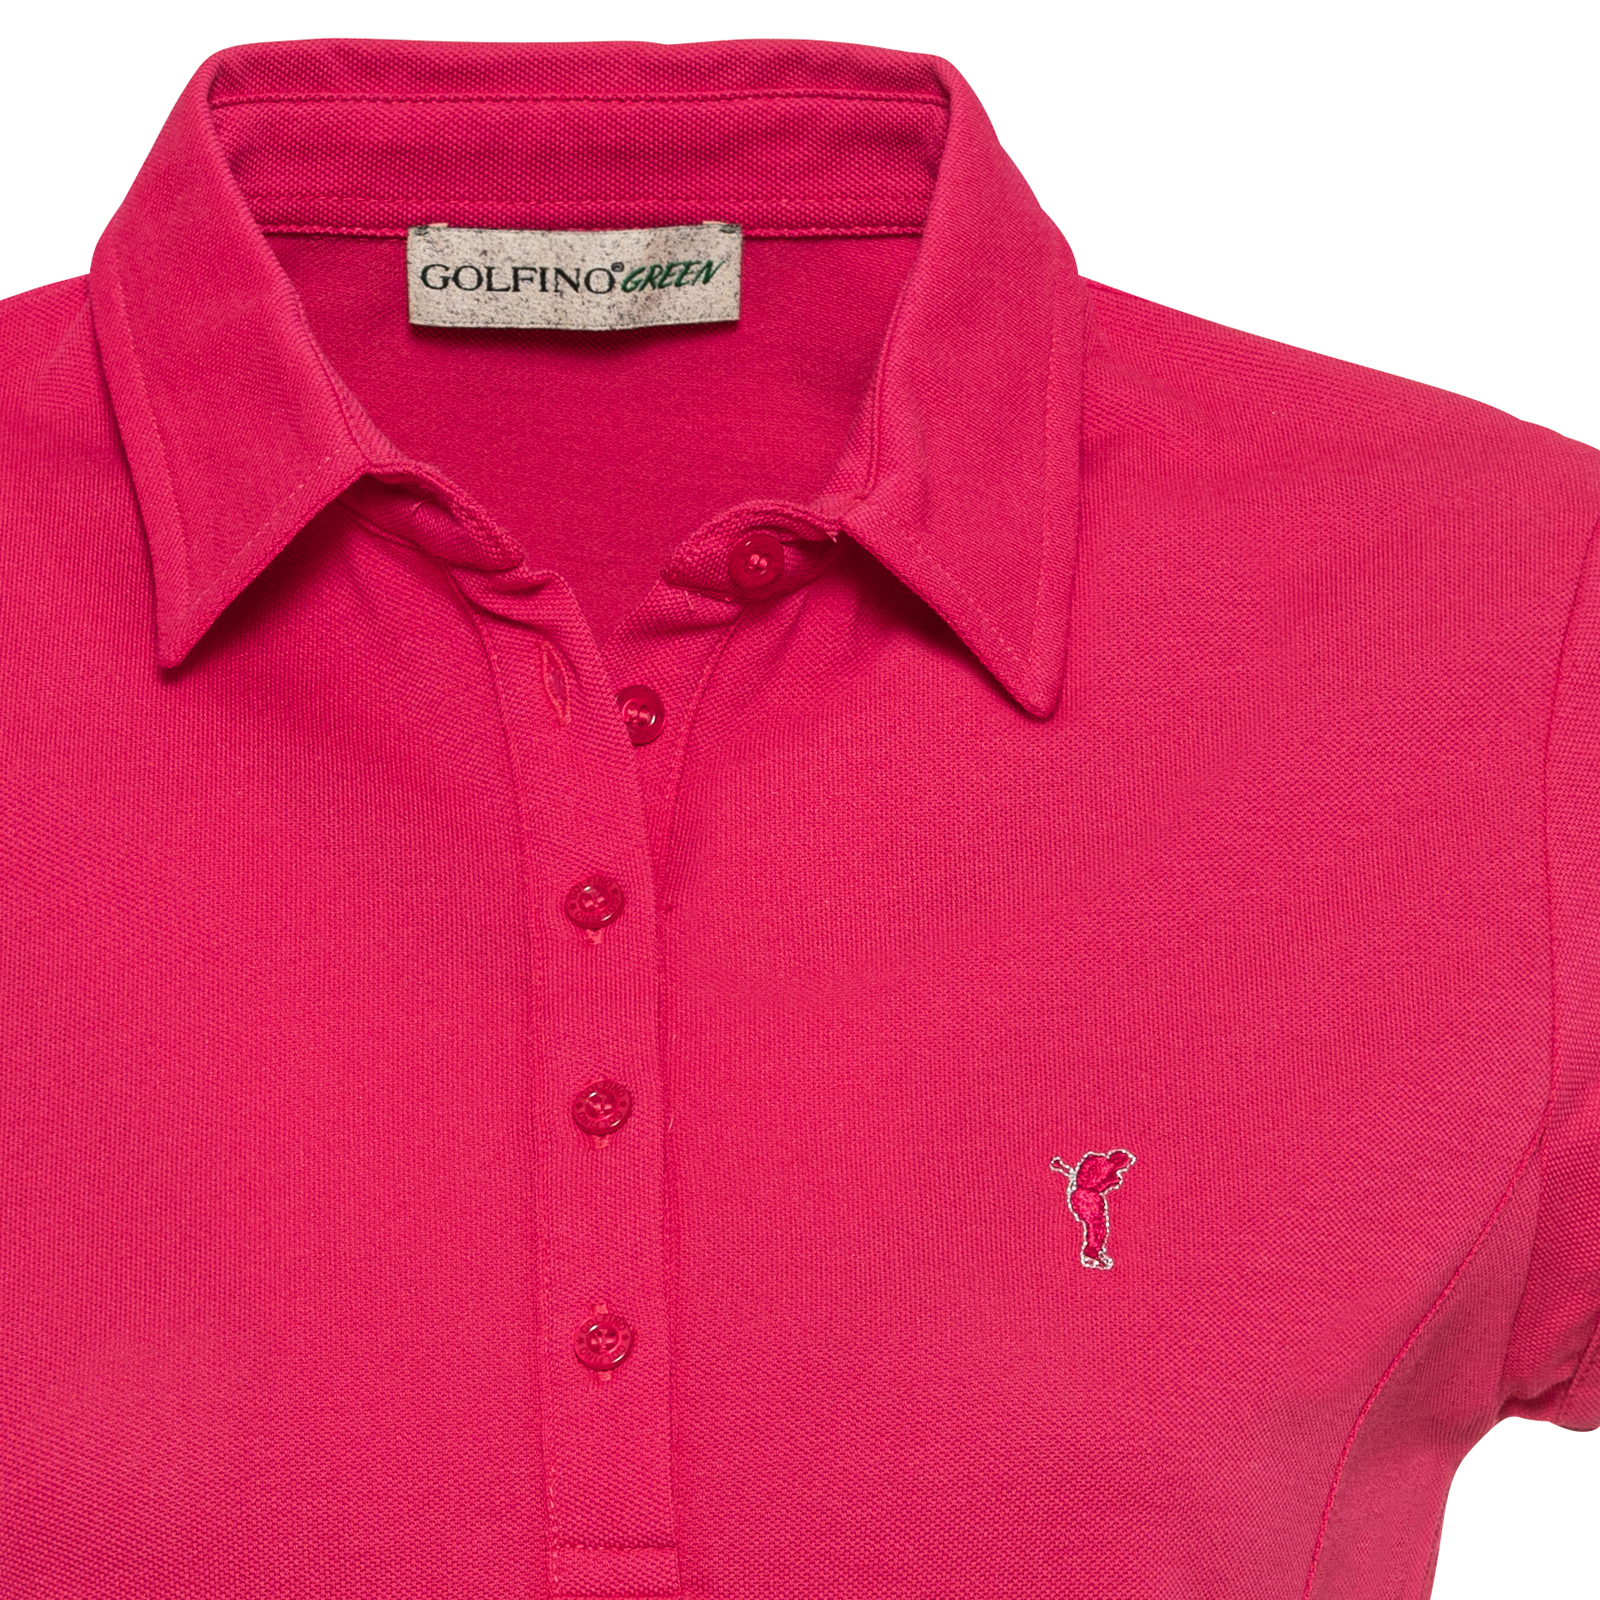 Damen Golf Shirt mit SEAQUAL® Hightech-Faser